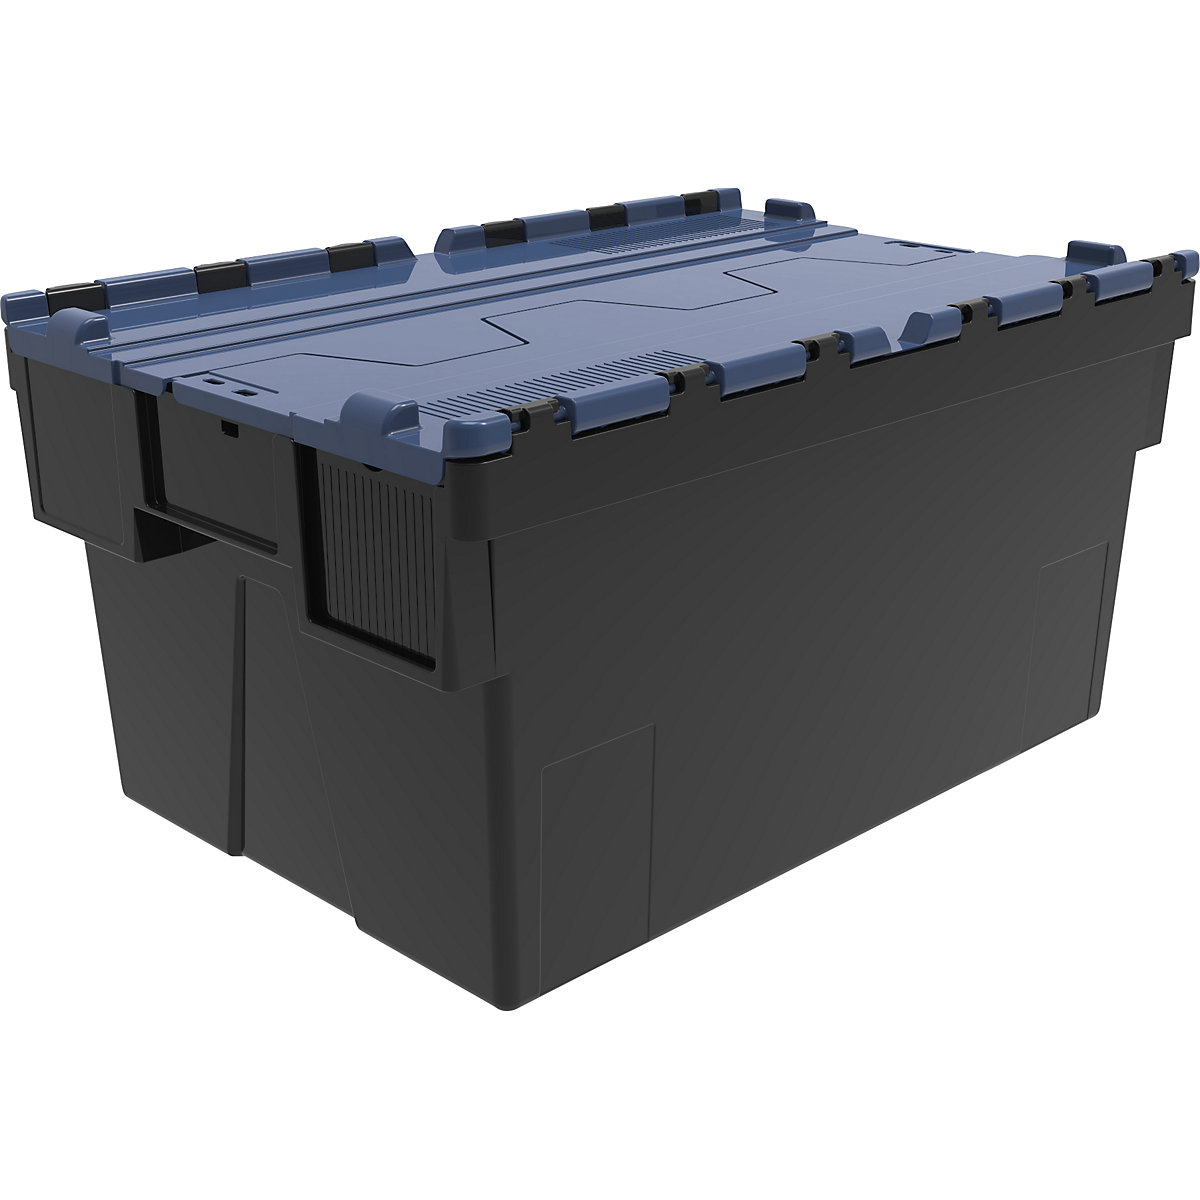 Recipiente empilhável e retornável, CxLxA 600 x 400 x 310 mm, embalagem de 5 unid., preto, tampa azul